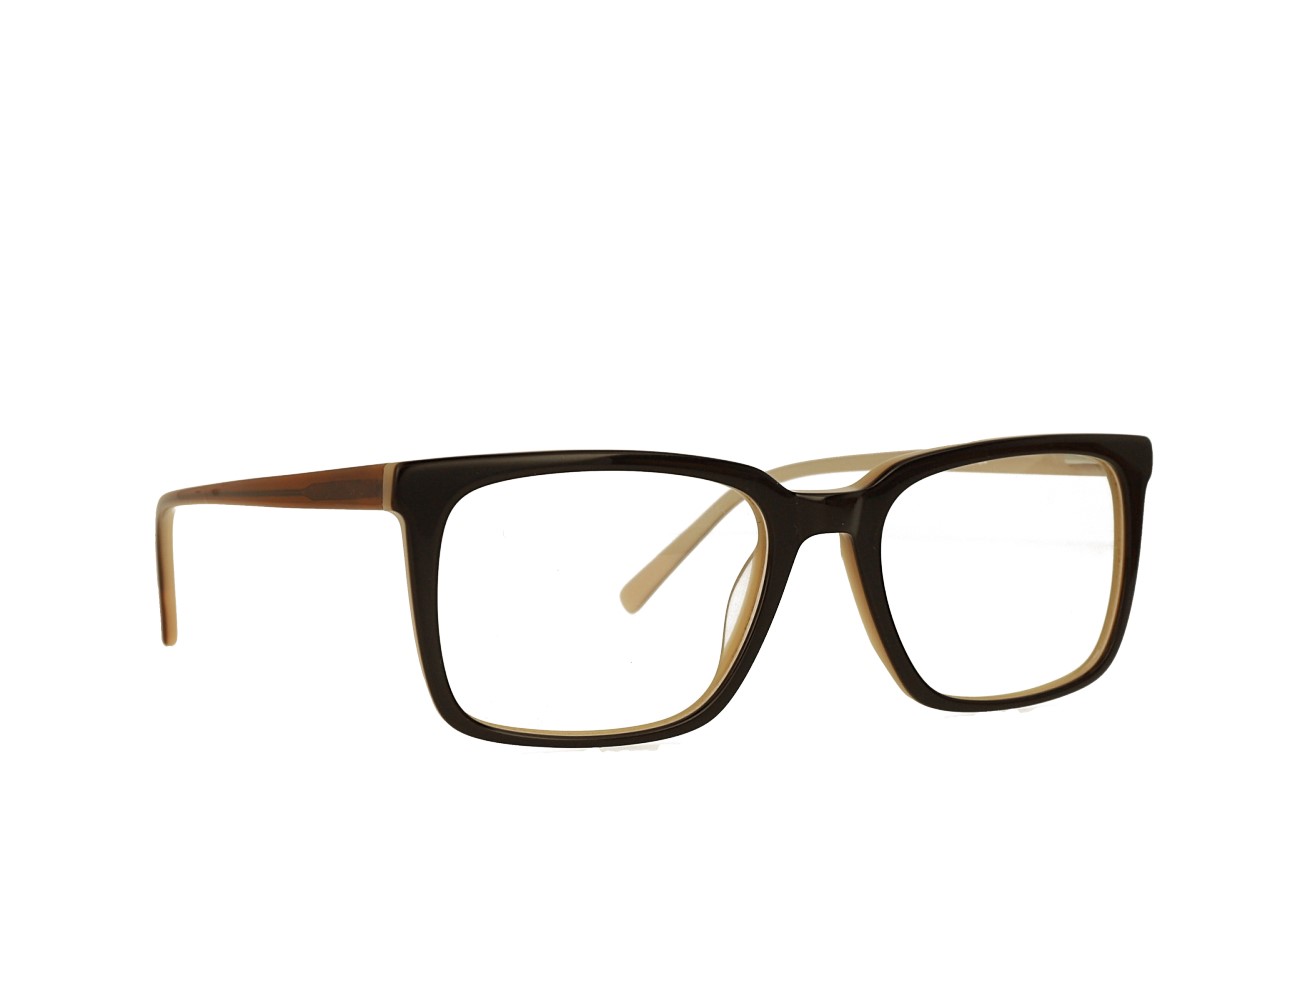 57 Mans Square Optical frame Acetate Eyeglasses Spring Hinge Eyewear